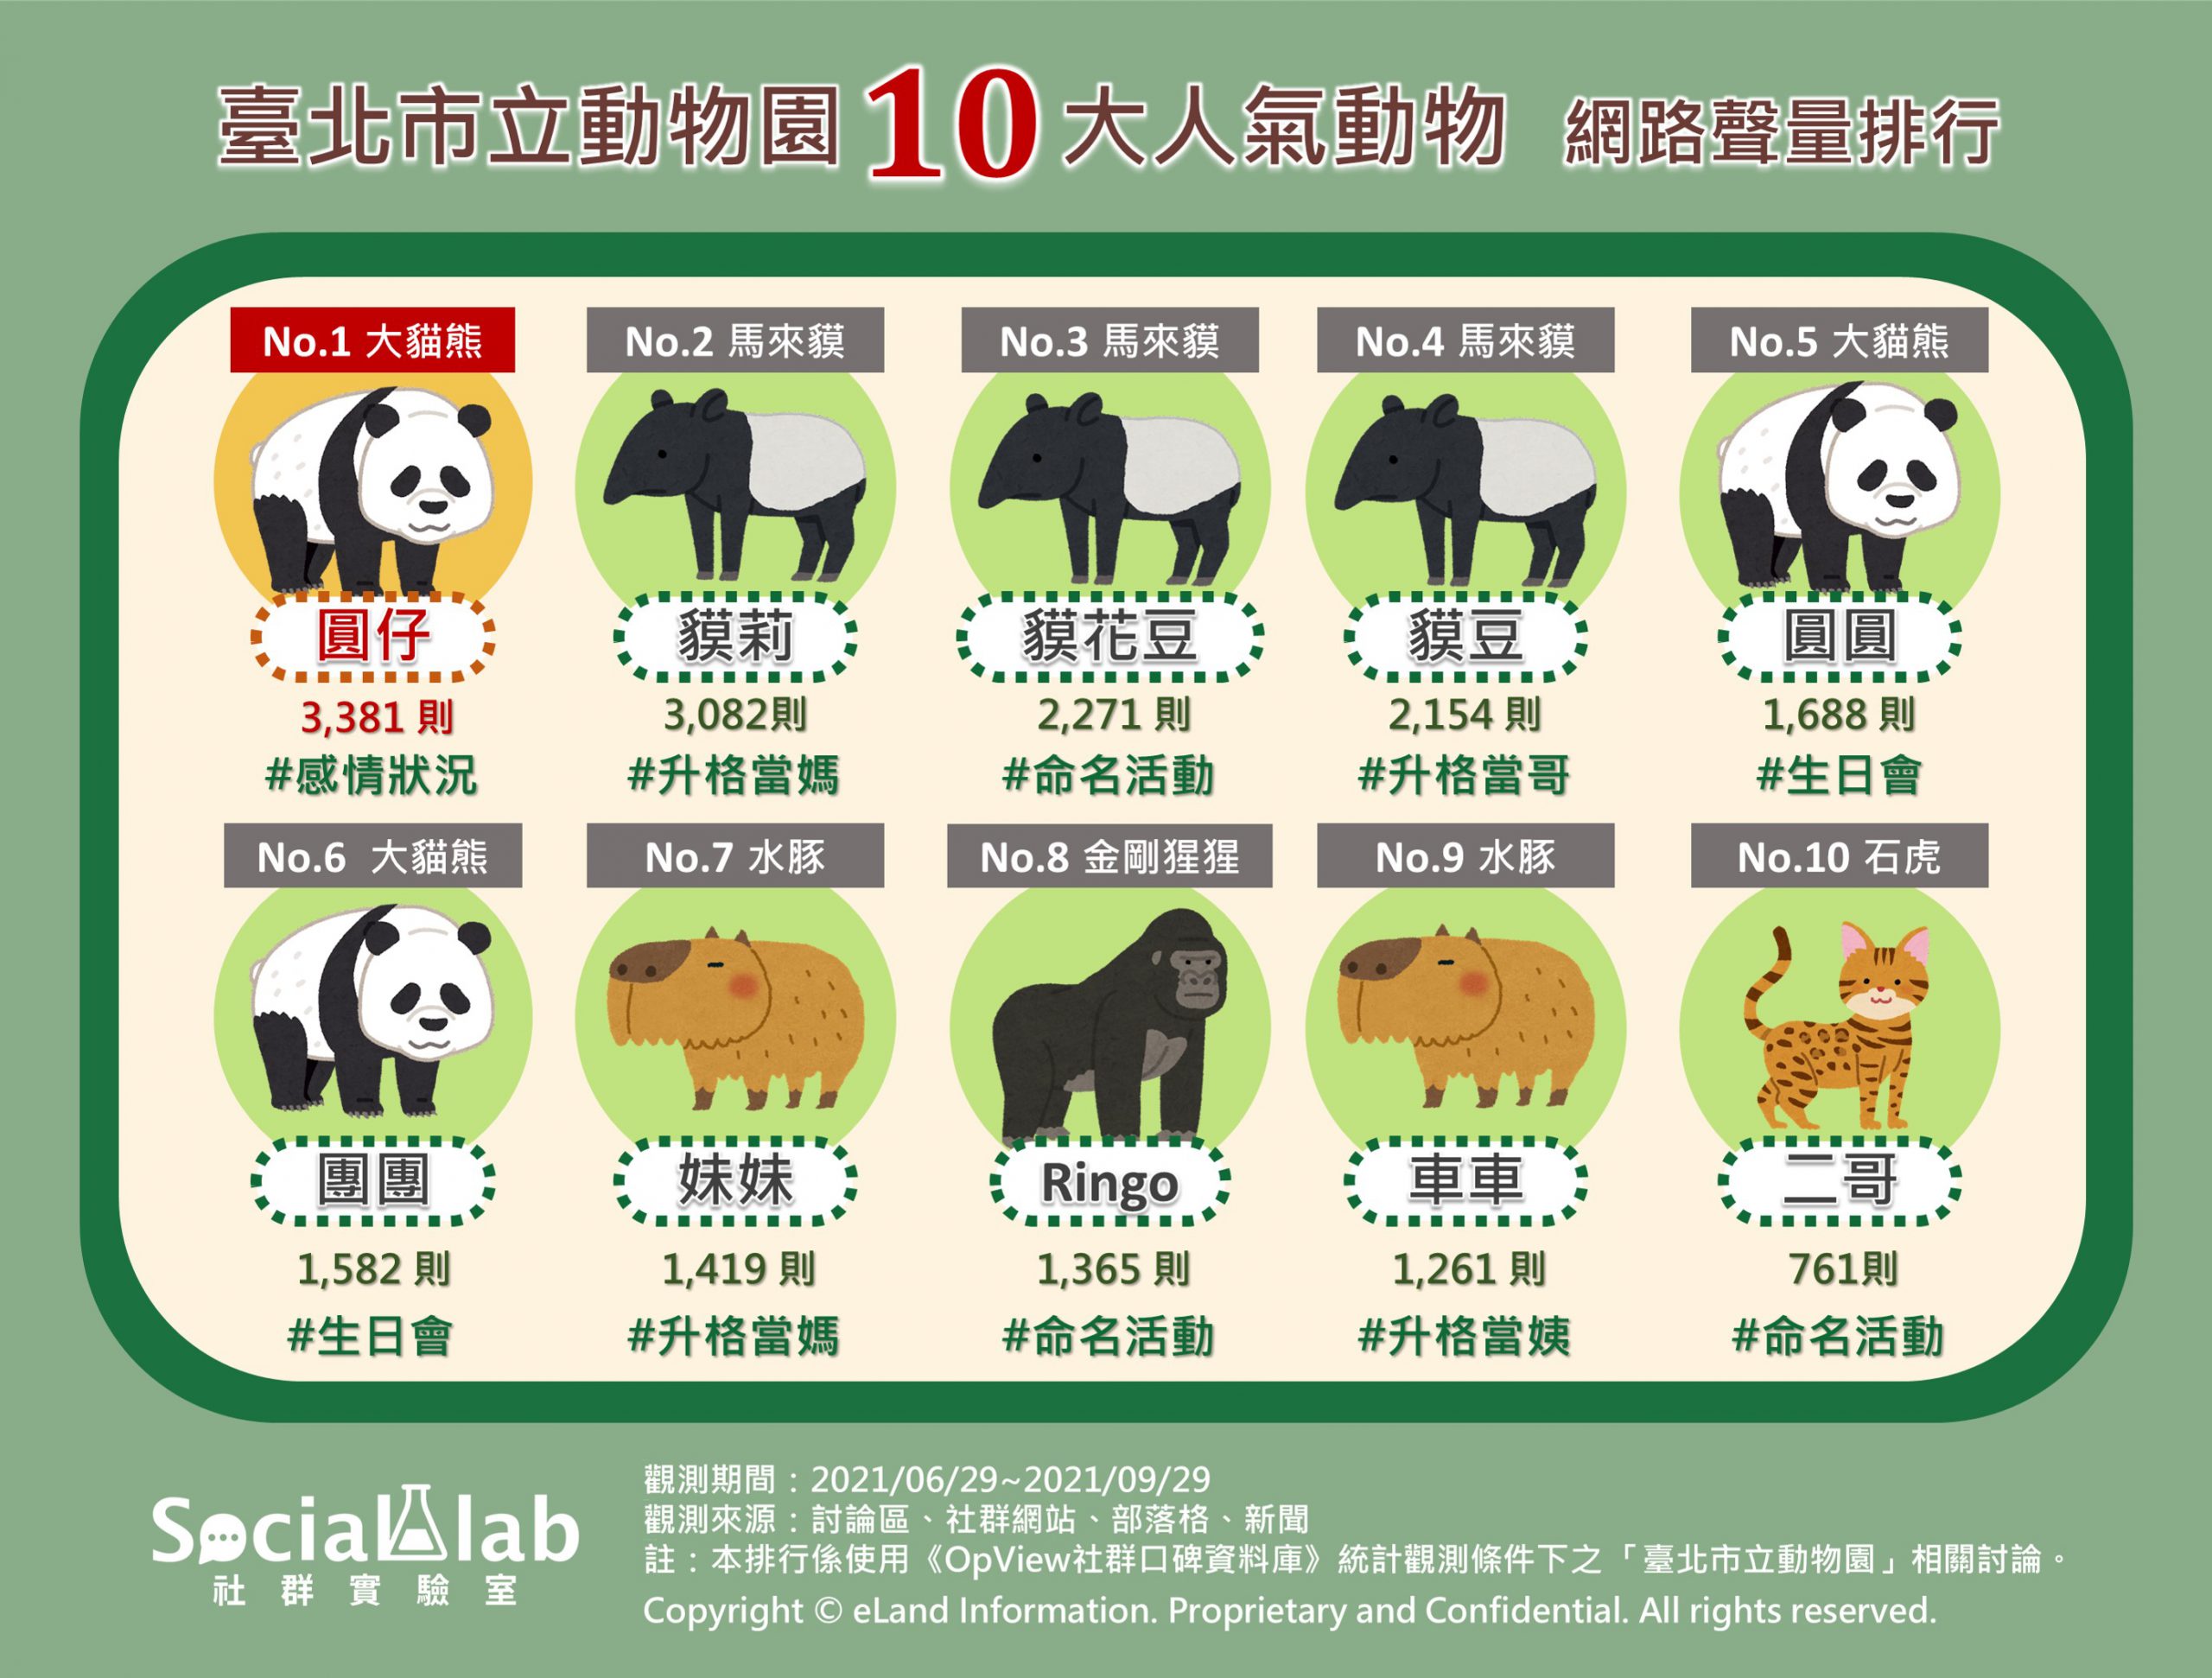 臺北市立動物園10大人氣動物網路聲量排行